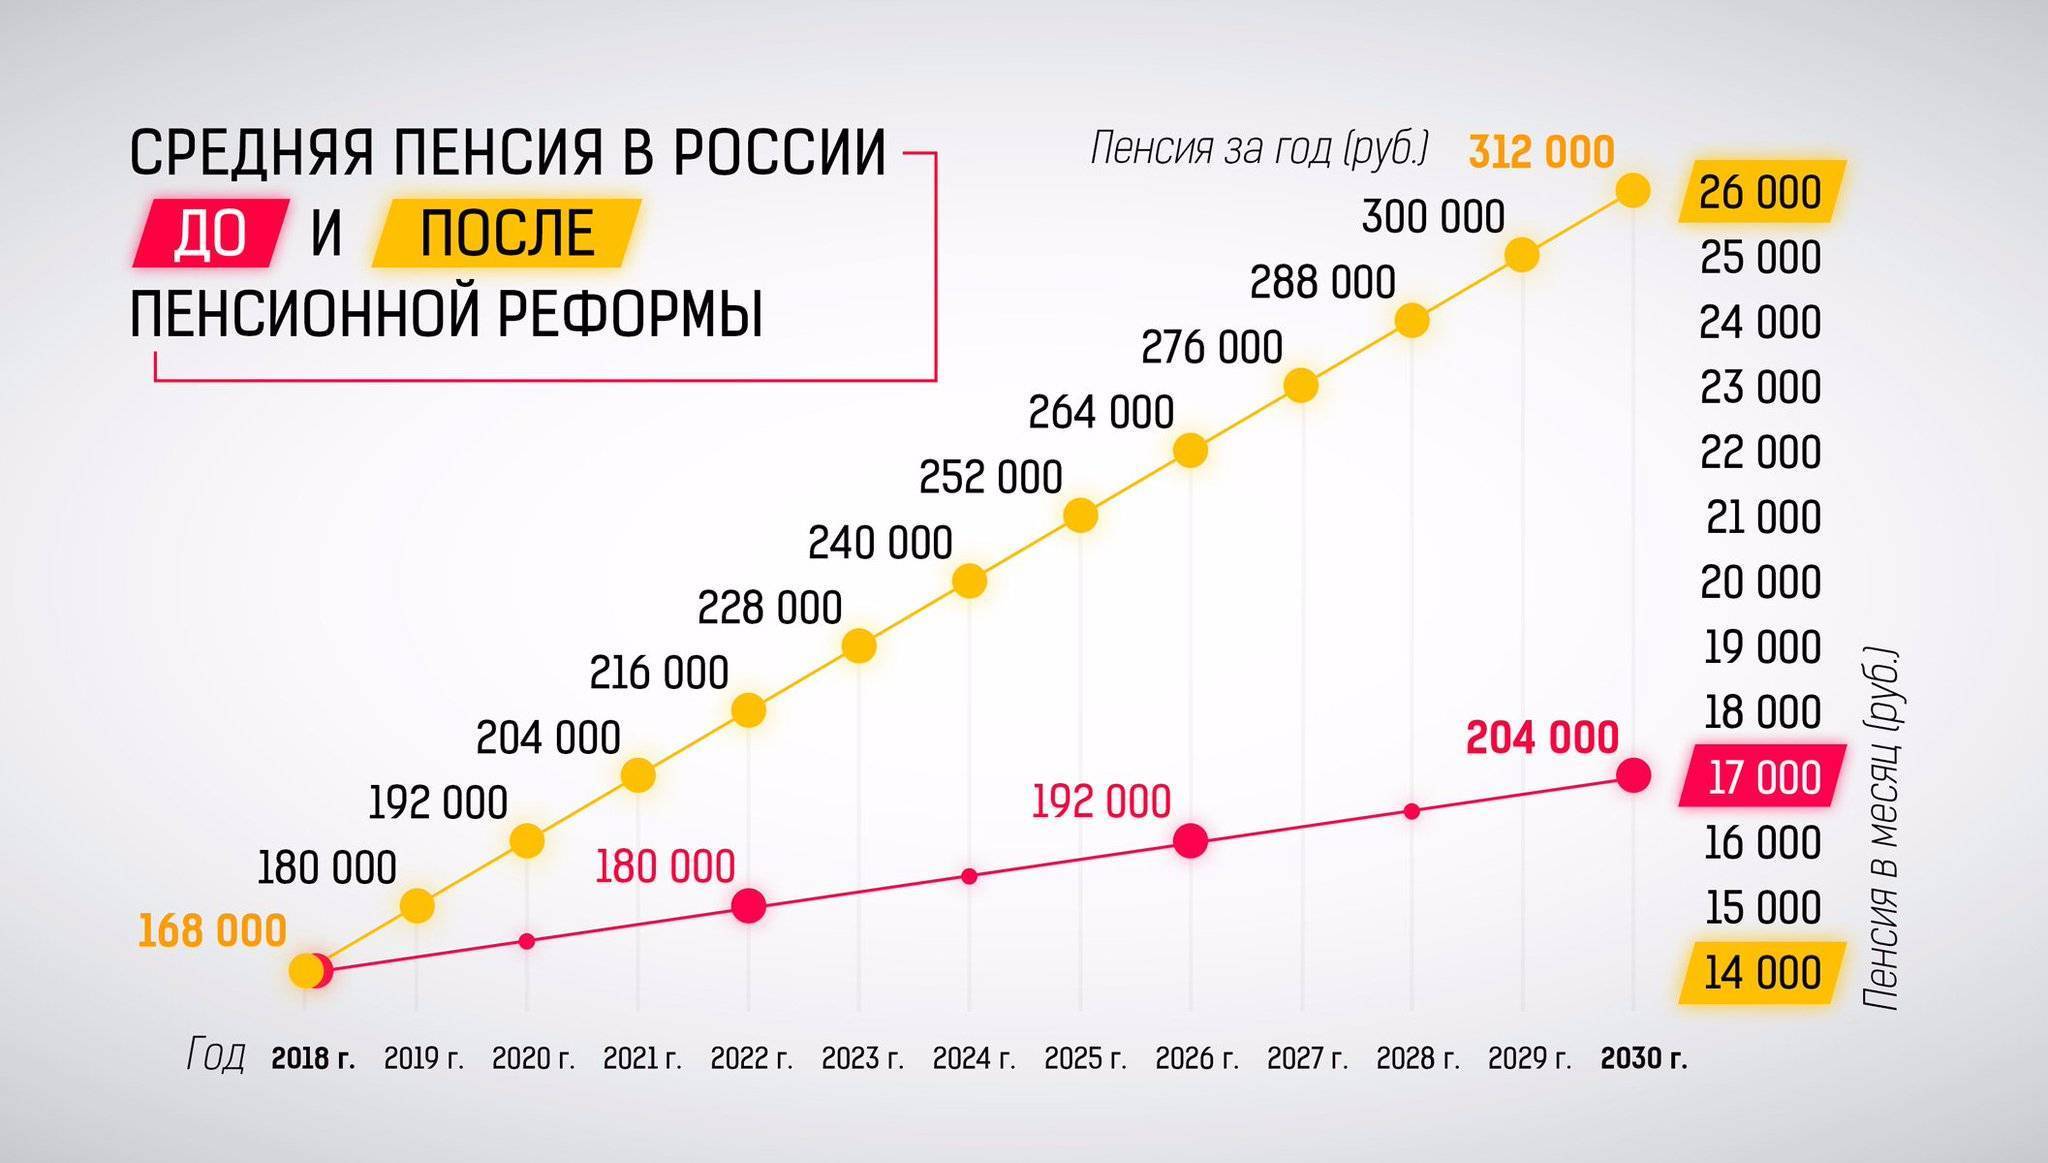 Минимальная пенсия в россии – кому положена и её размер?